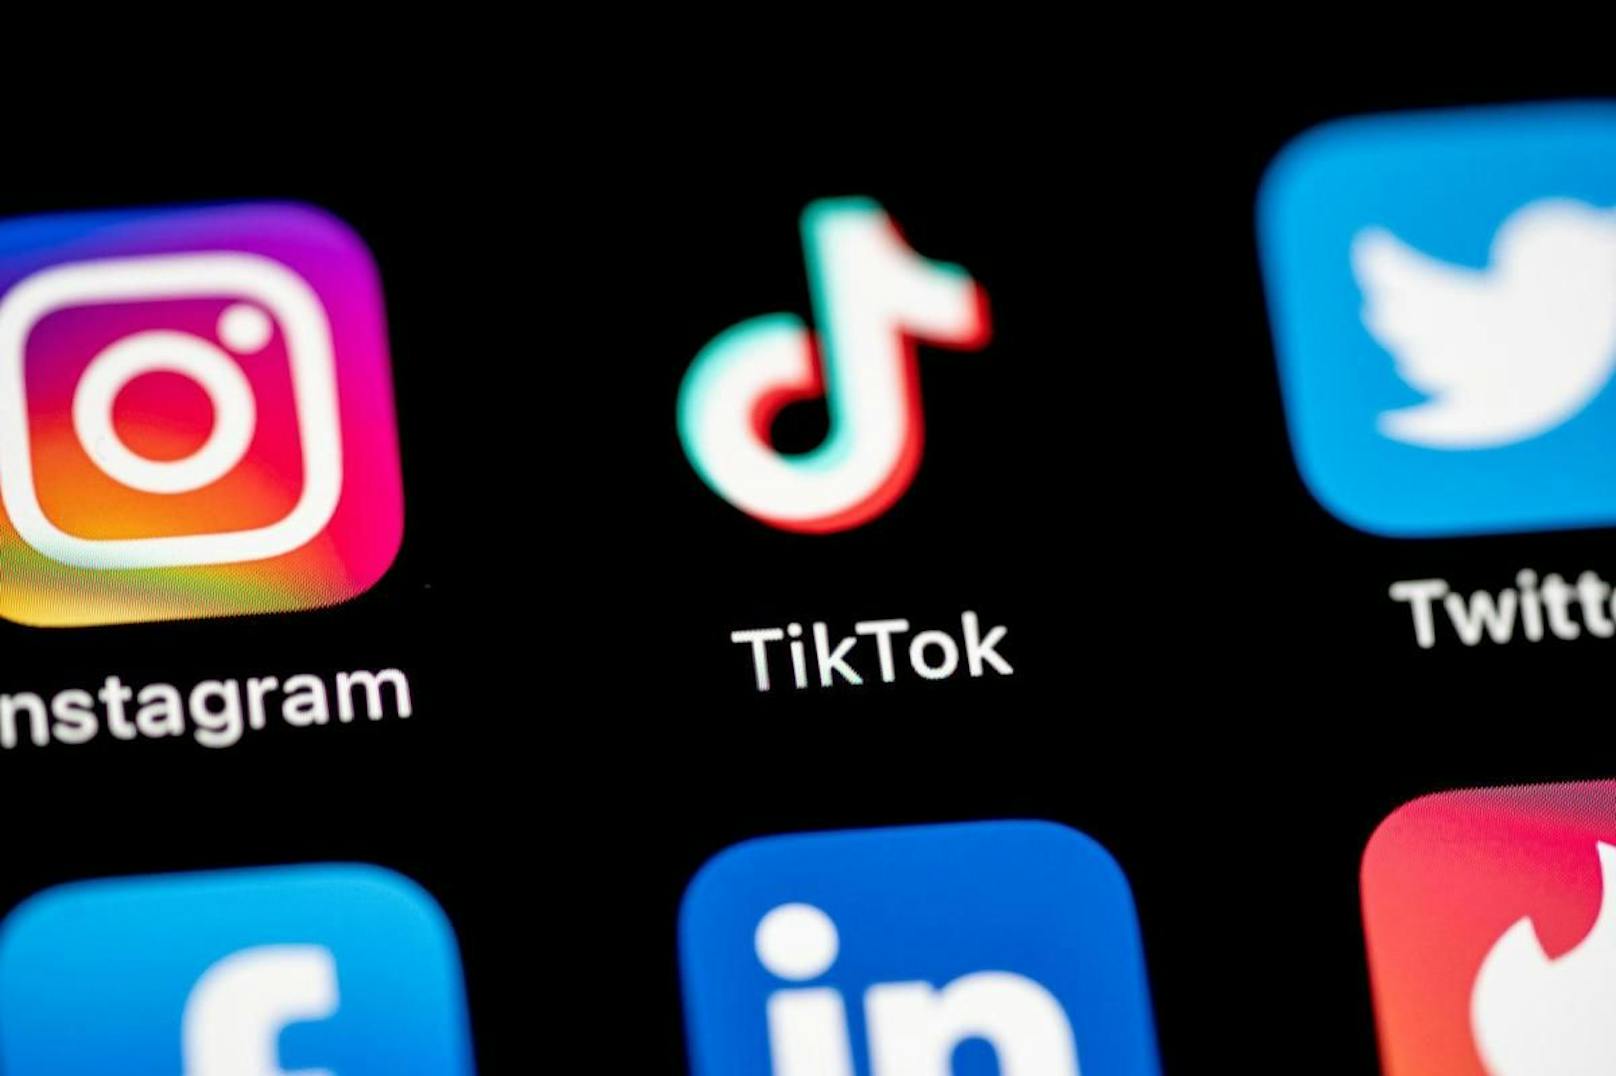 Es ist nicht die erste Social-Media-Plattform, die versucht, Tiktok Konkurrenz zu machen.